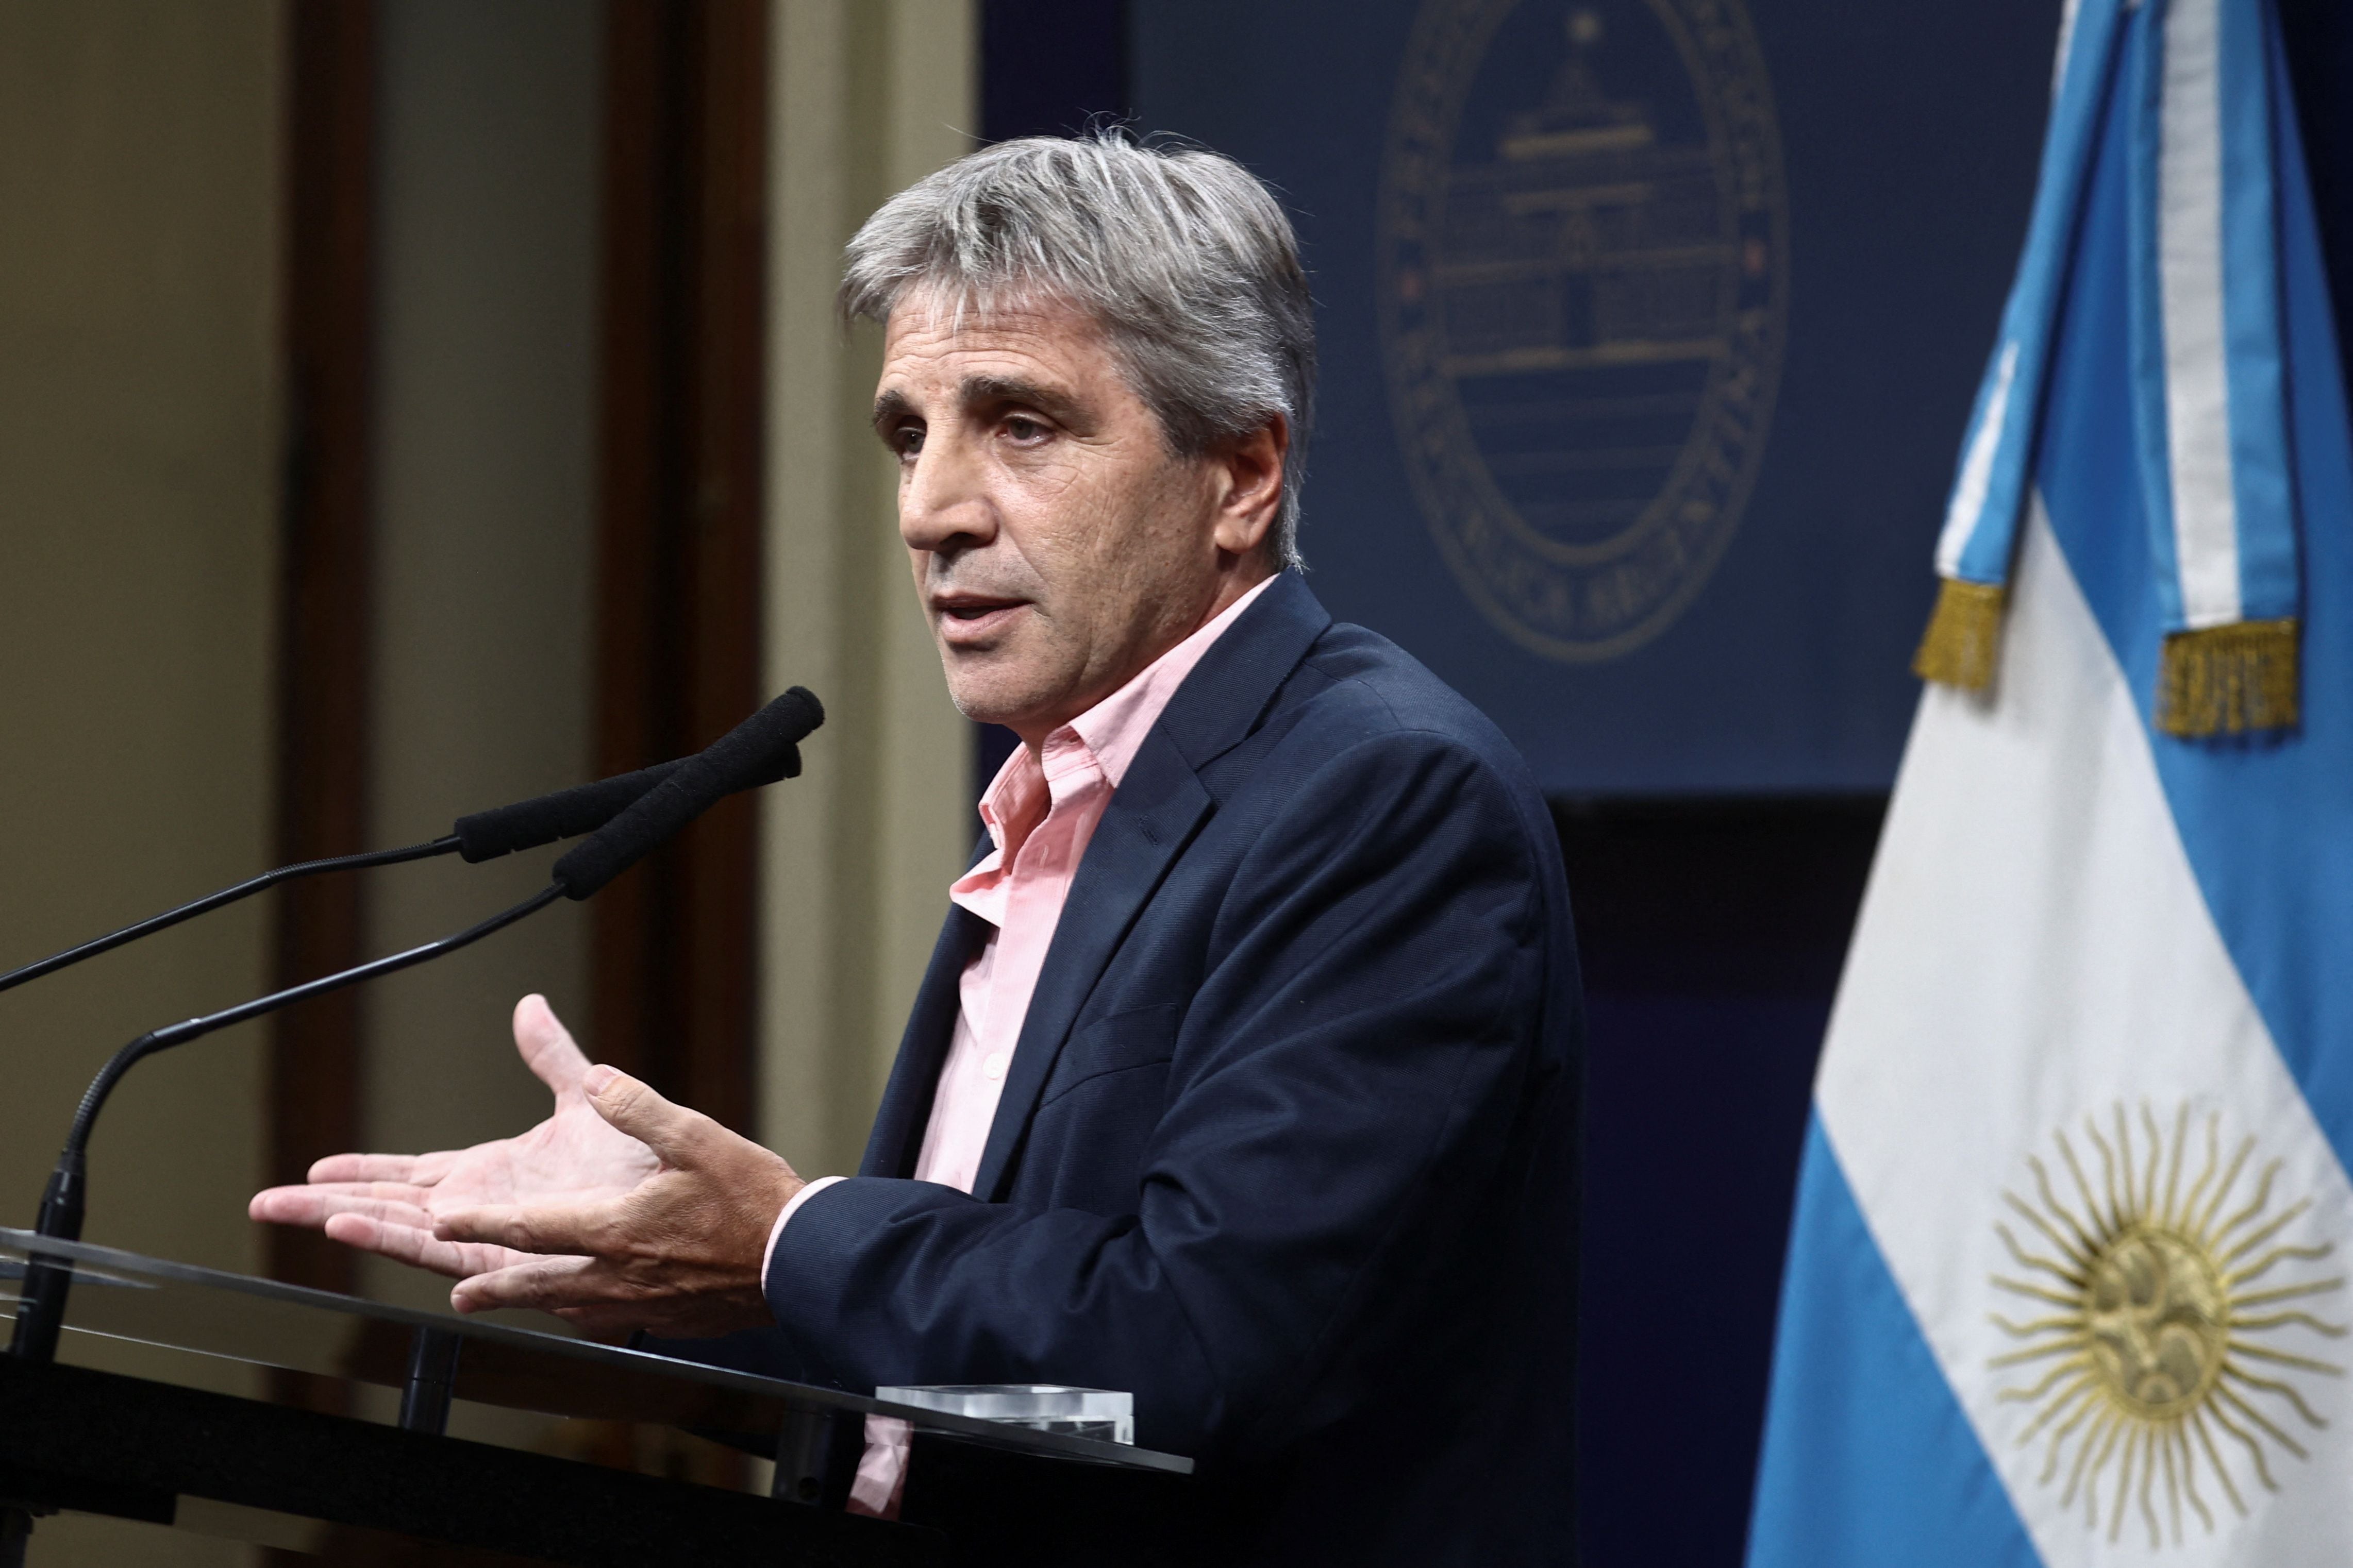 El ministro de Economía, Luis Caputo, durante la conferencia de prensa en la que anunció la eliminación del paquete fiscal de la Ley Ómnibus (REUTERS/Tomas Cuesta)